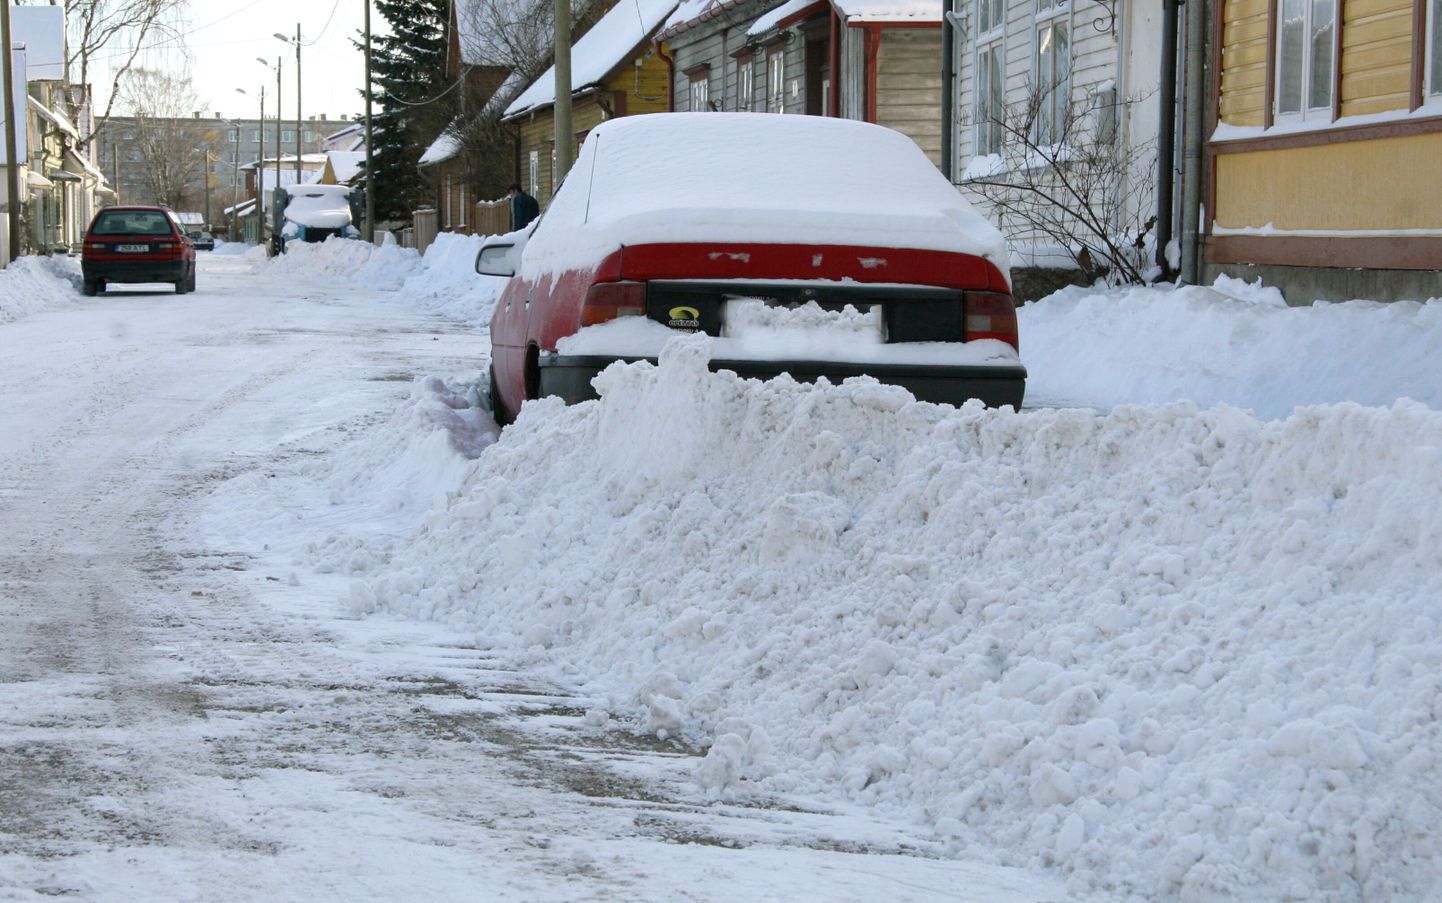 Tänavale pargitud autod takistavad teedelt lume koristamist. Foto on illustreeriv.